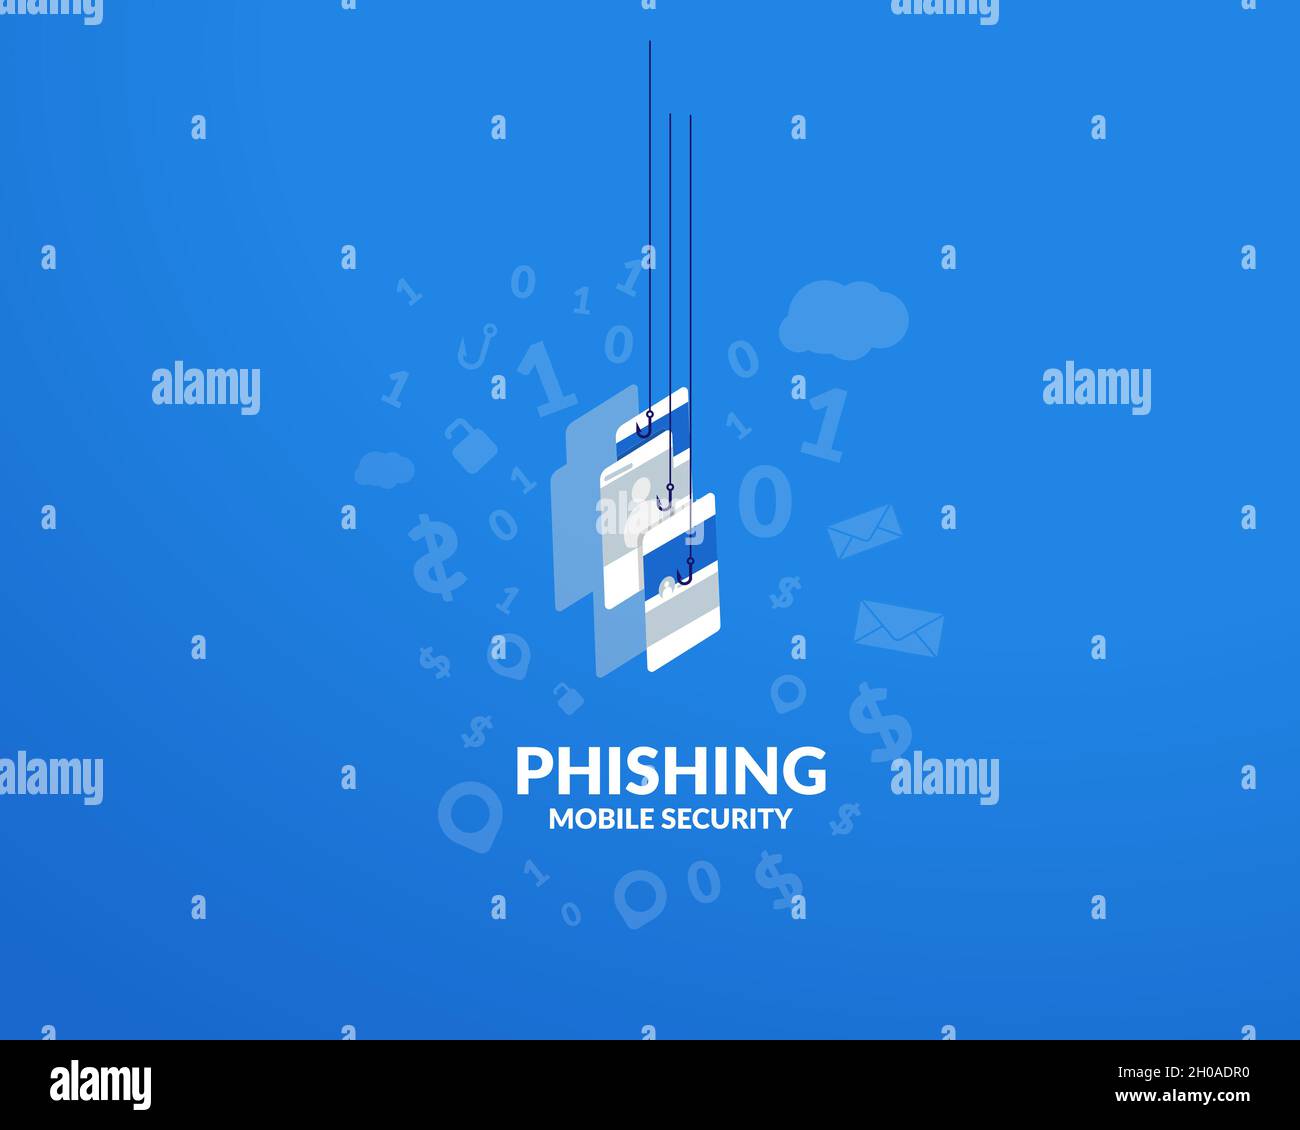 Phishingbetrug, Hacker-Angriffe auf das Netzwerk und Online-Internetsicherheit. Hacking Kreditkarten, Passwörter und persönliche Informationen.Cyber-Banking-Konto. Stock Vektor